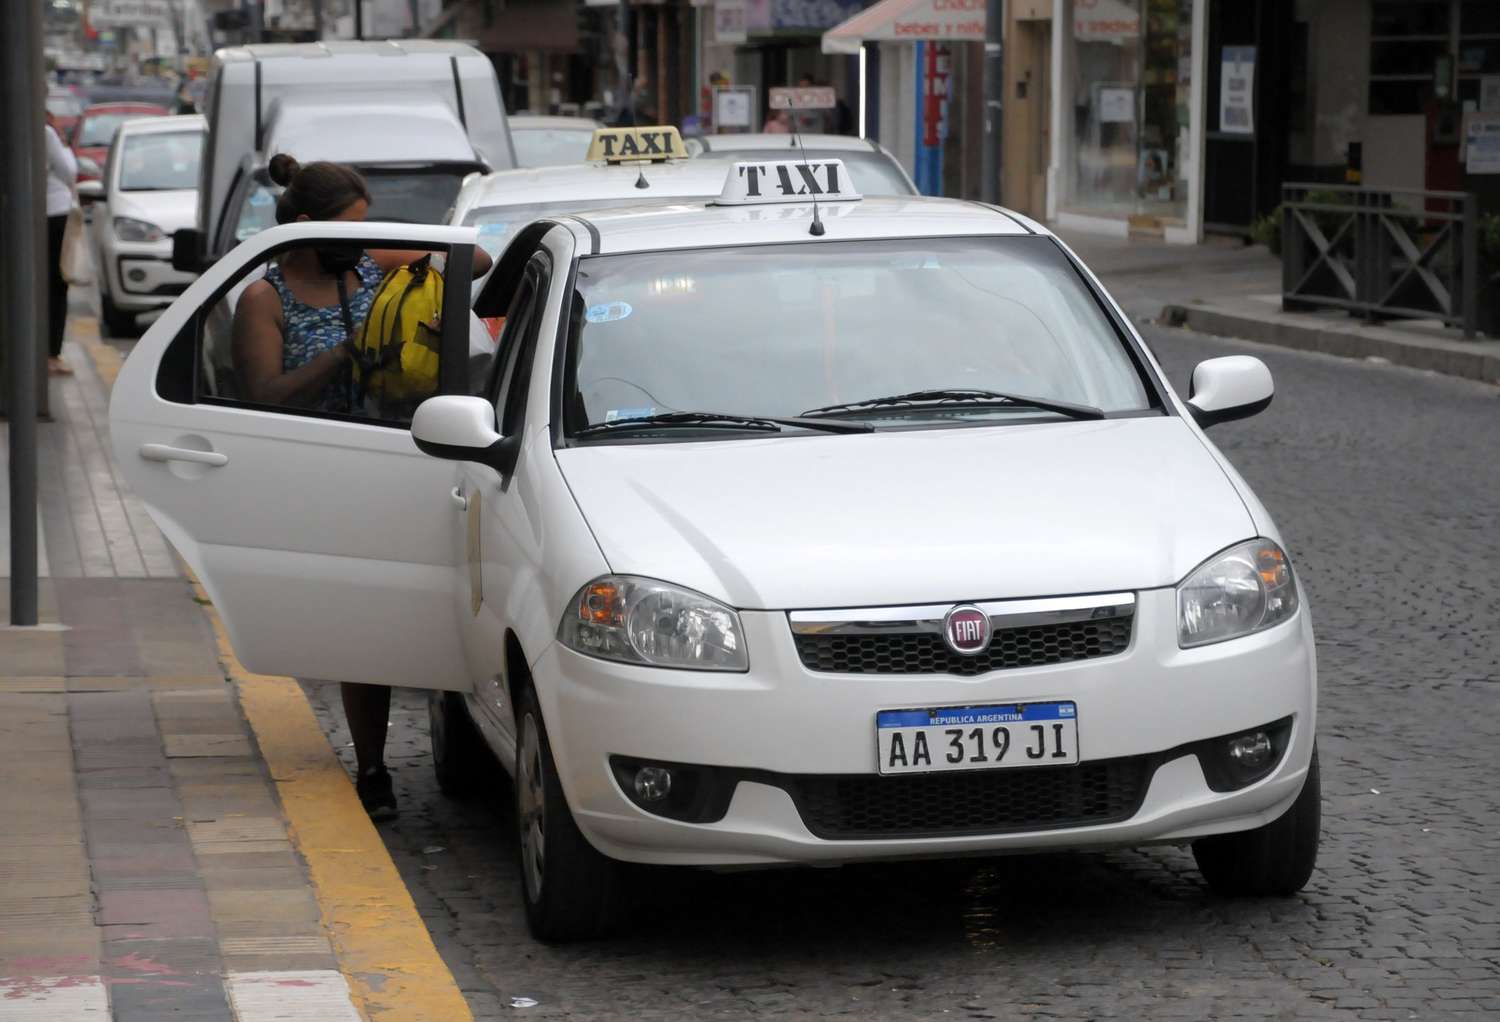 Ante la posible llegada de Uber, taxistas proponen licencias por sistema de puntos y mejores controles